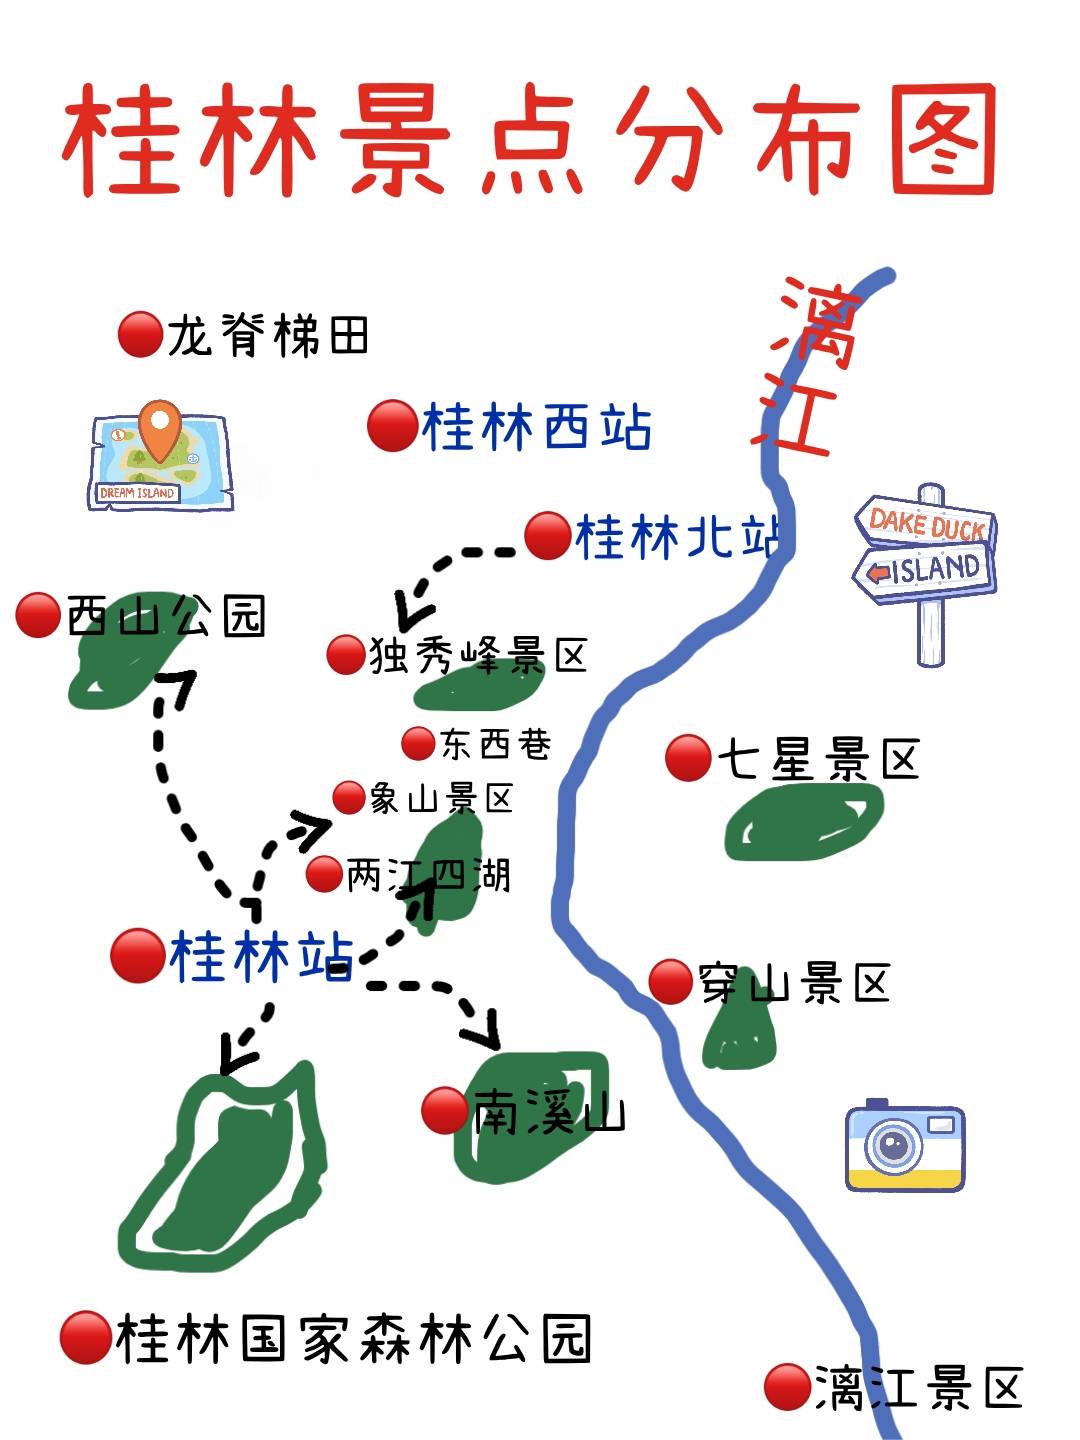 到正阳步行街(10路,100路,99路公交车大概15分钟04桂林火车站有3个